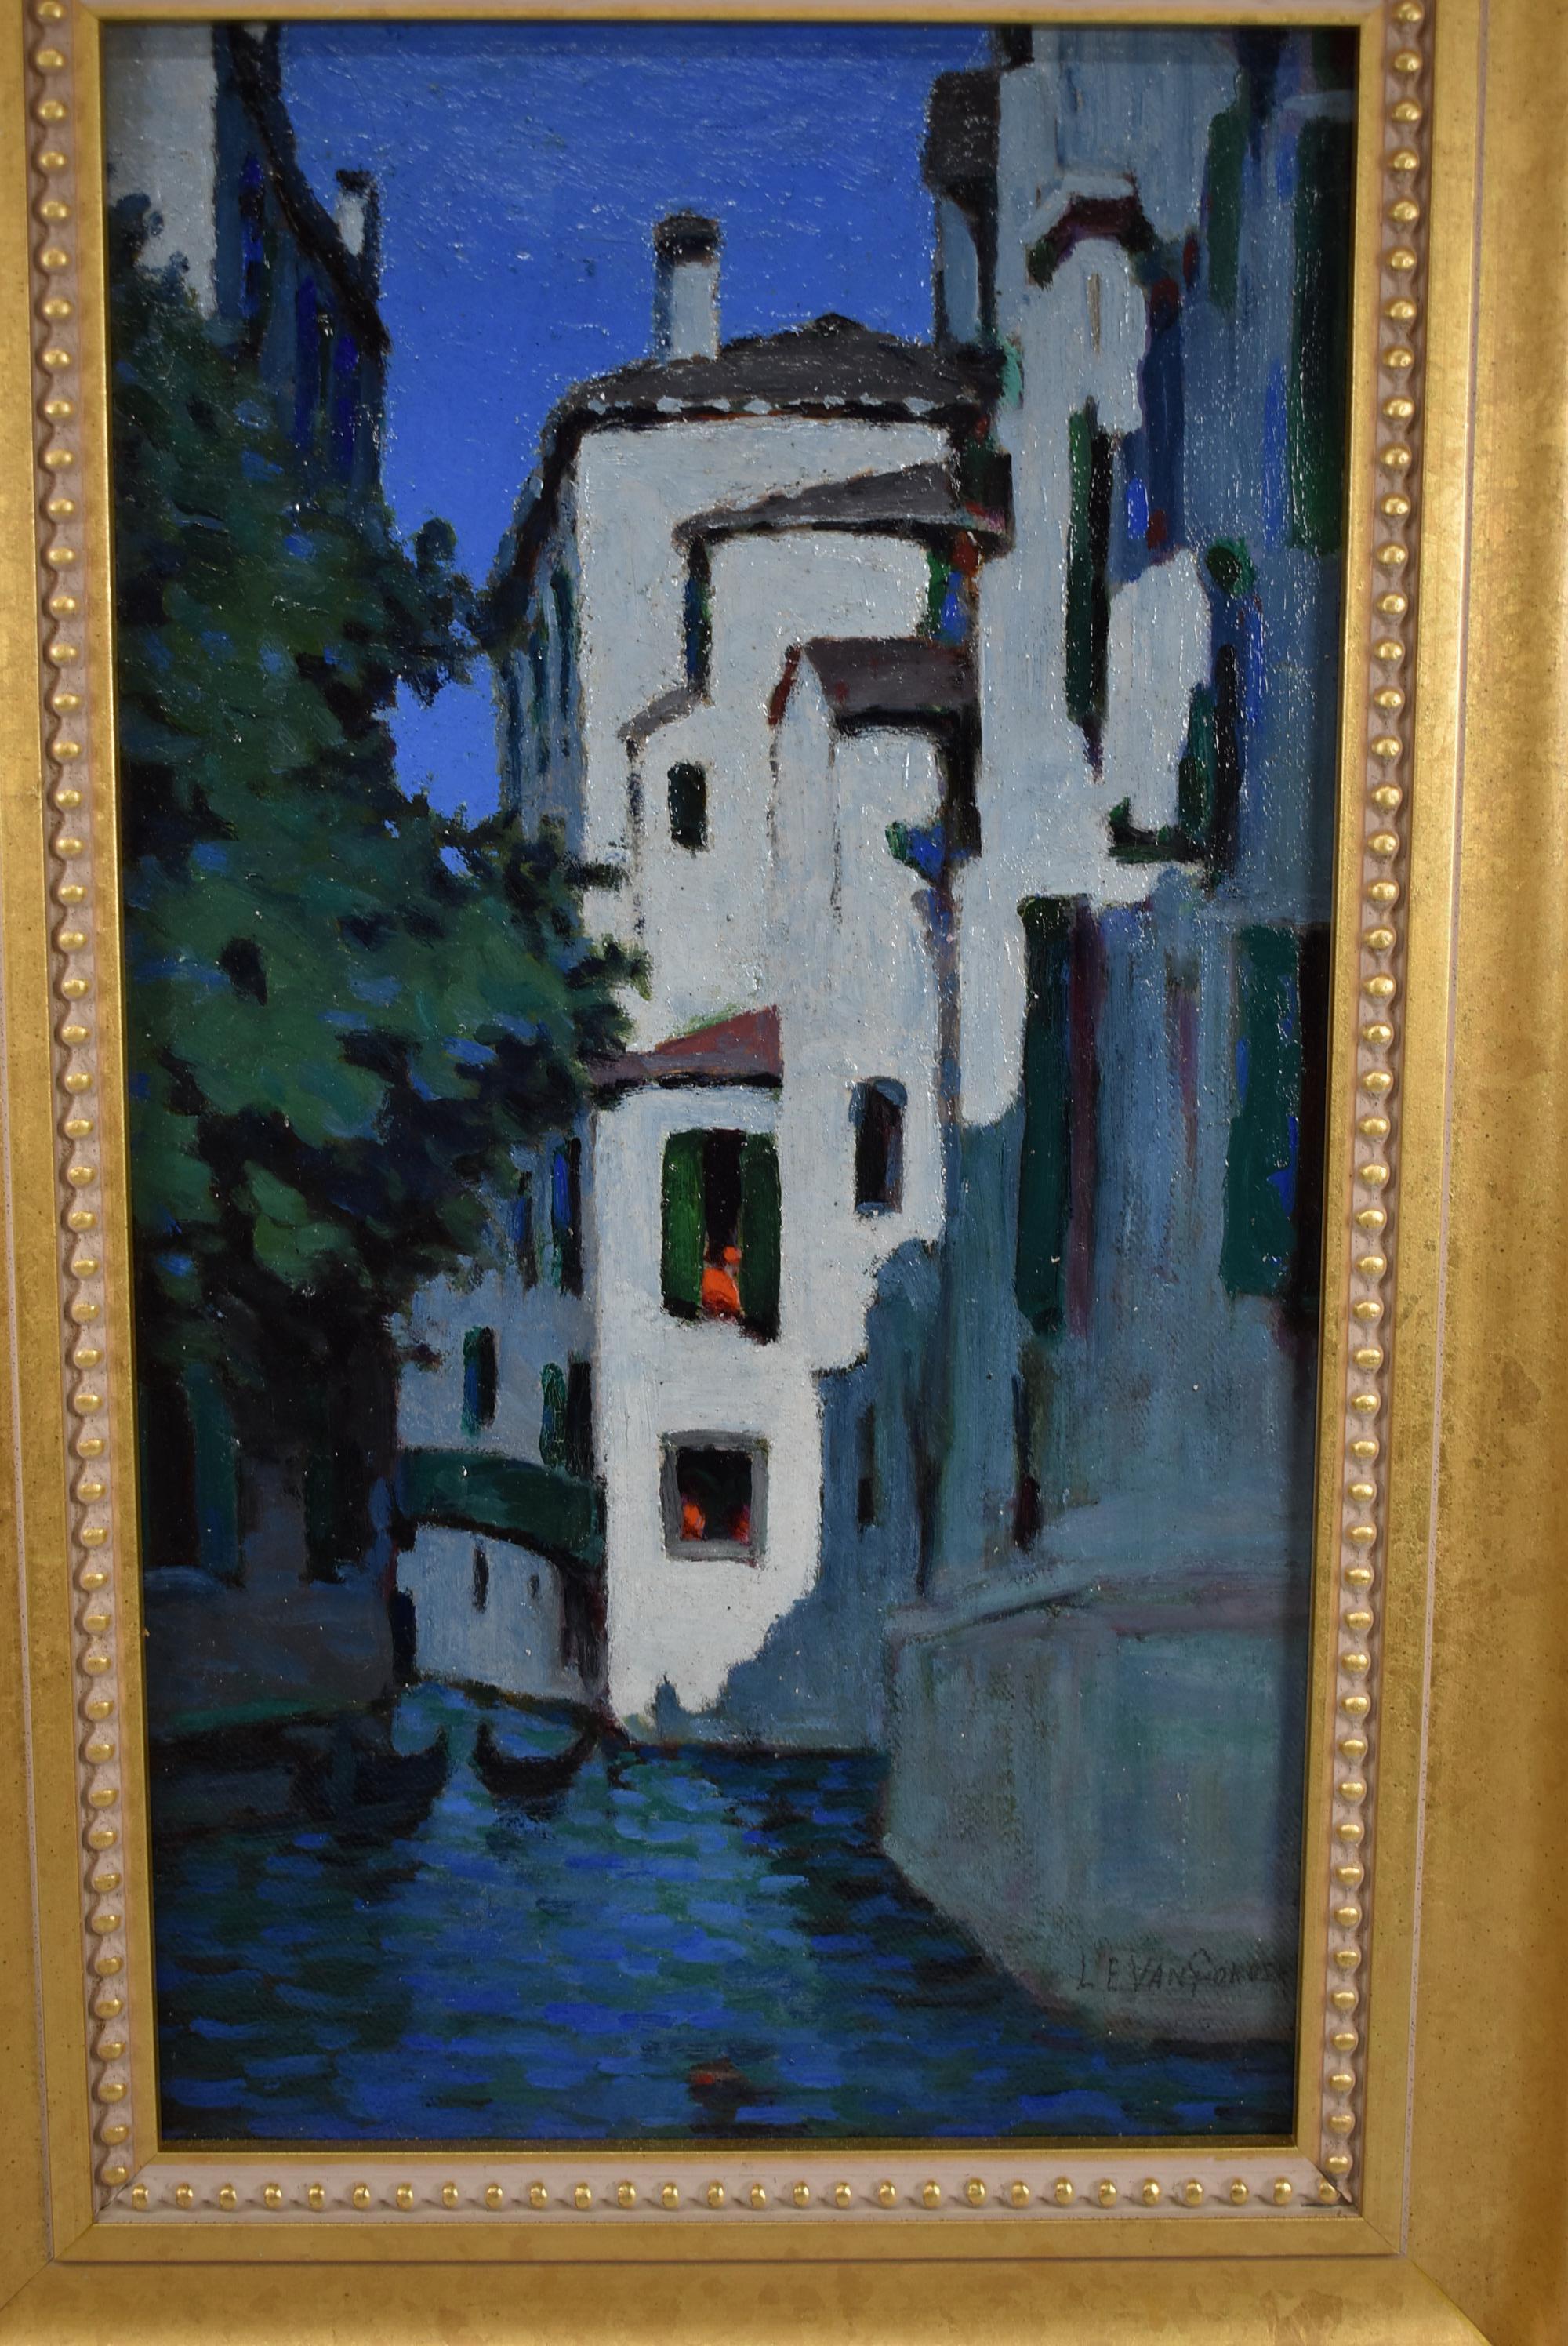 Scène du canal de Venise au crépuscule, huile sur panneau d'artiste par Luther Van Gorder. Signé en bas à droite L E Van Gorder. Très bon état. Dimensions : 1.25